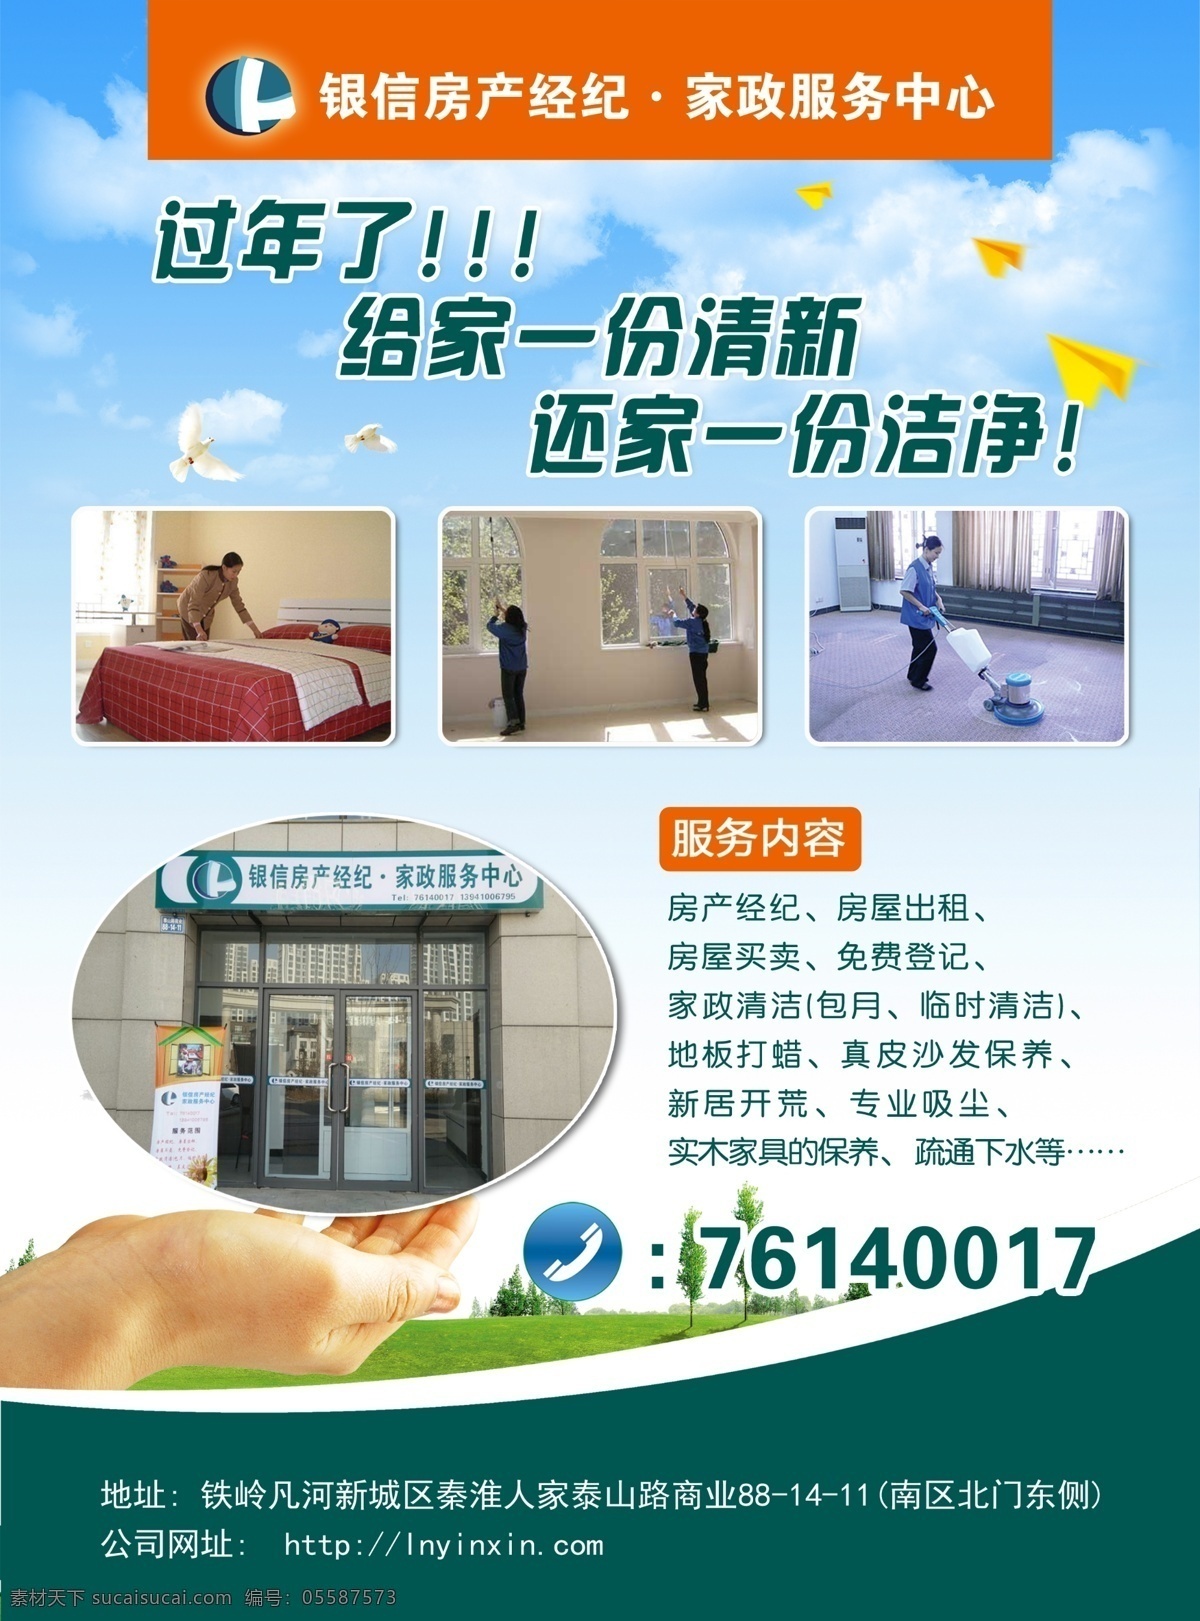 公司招聘广告 模版下载 保洁 房产经纪 家政服务 dm宣传单